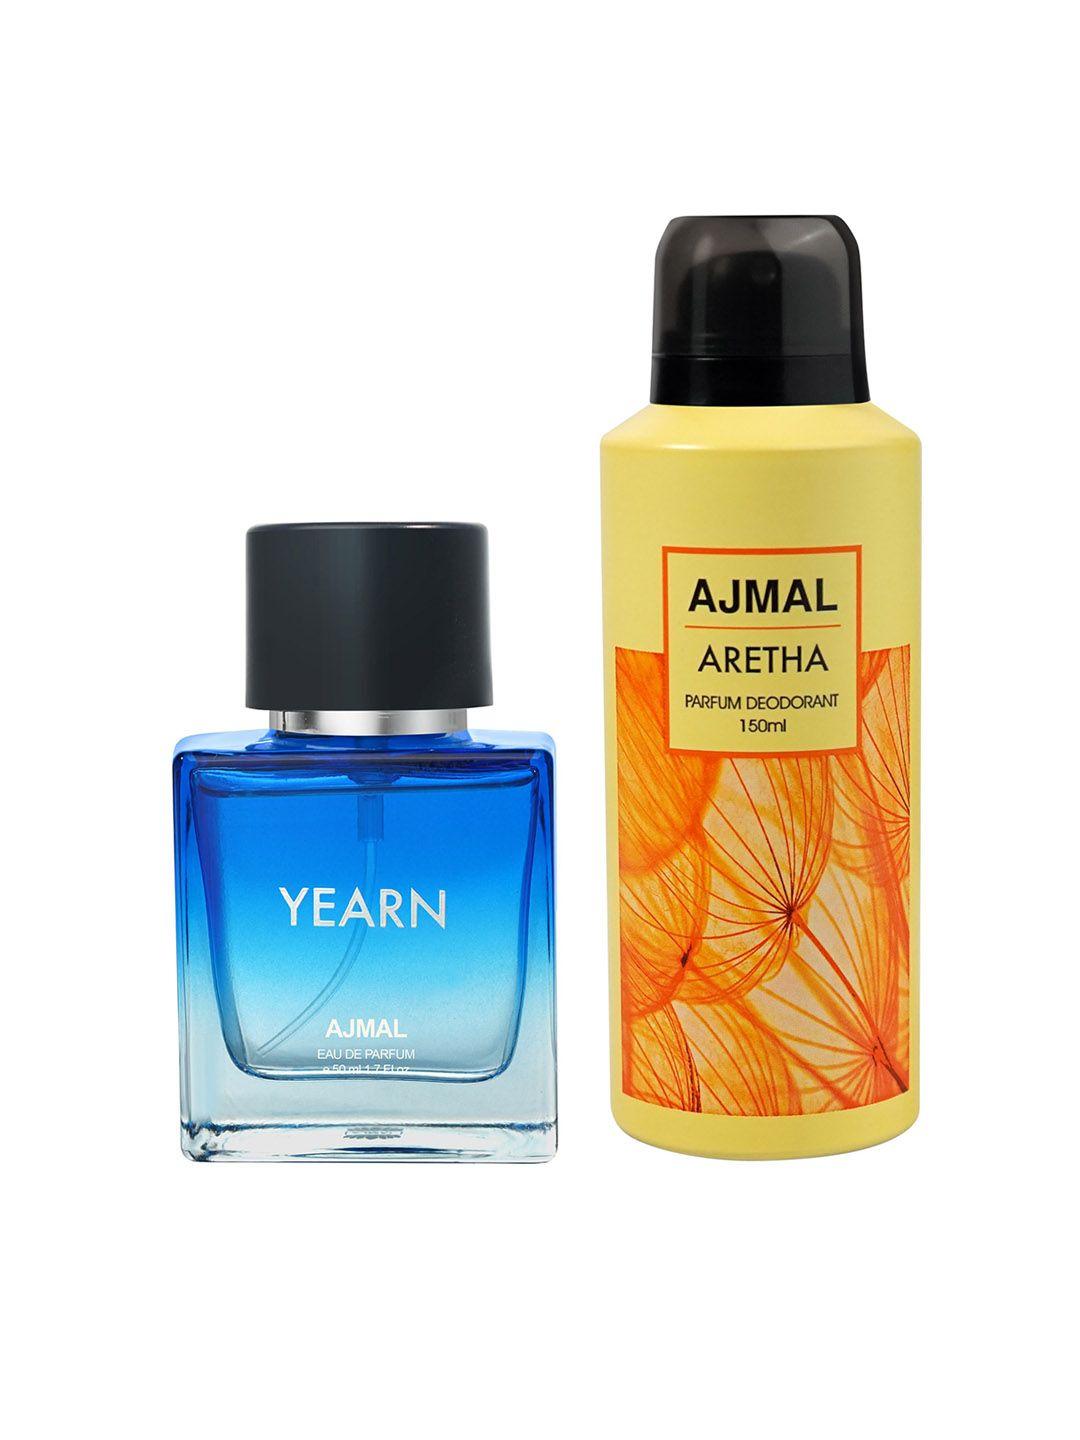 ajmal set of yearn eau de parfum 50ml & aretha deodorant 150ml